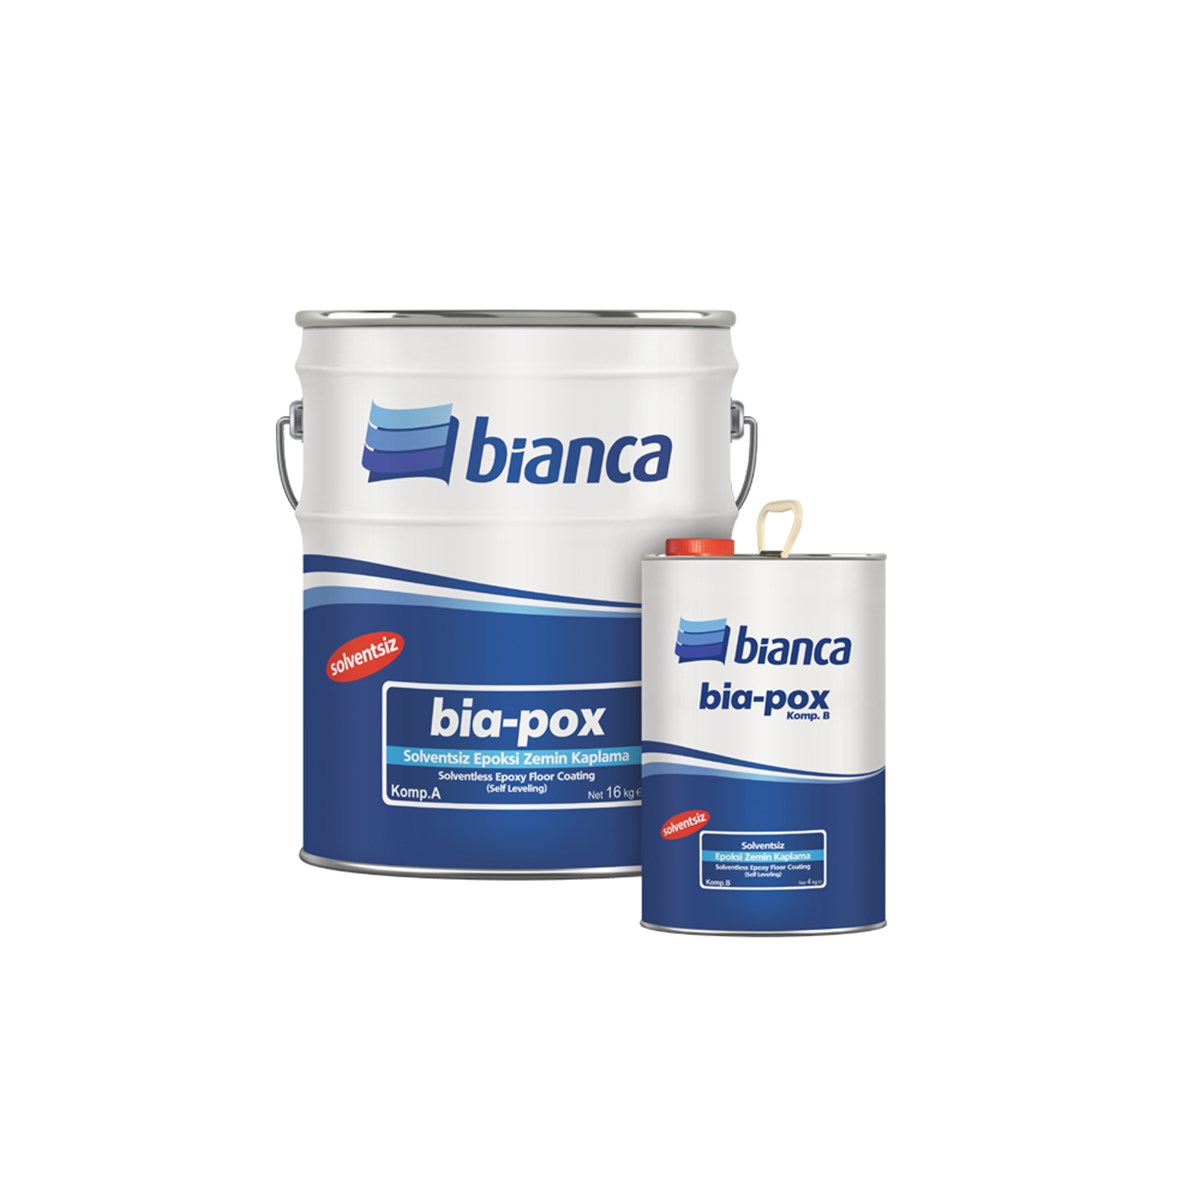 Bianca Bia-Pox Solventsiz Epoksi Zemin Kaplama Boyası Beyaz (Self Leveling)  20 Kg